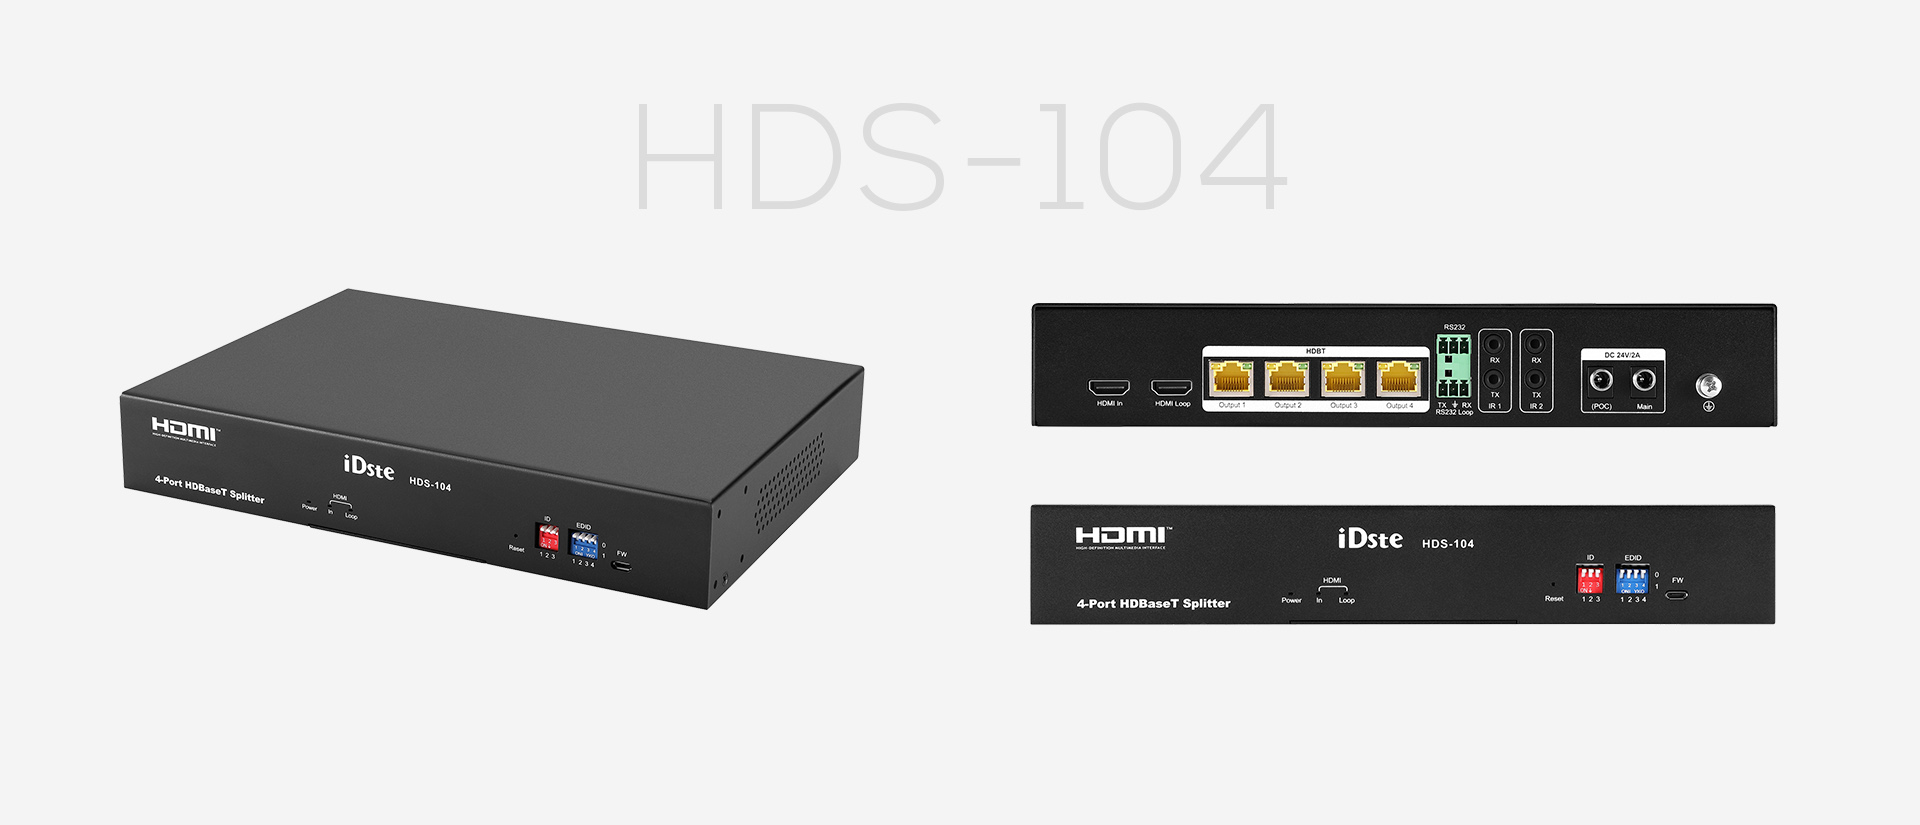 HDBaseT Distributor HDS-104